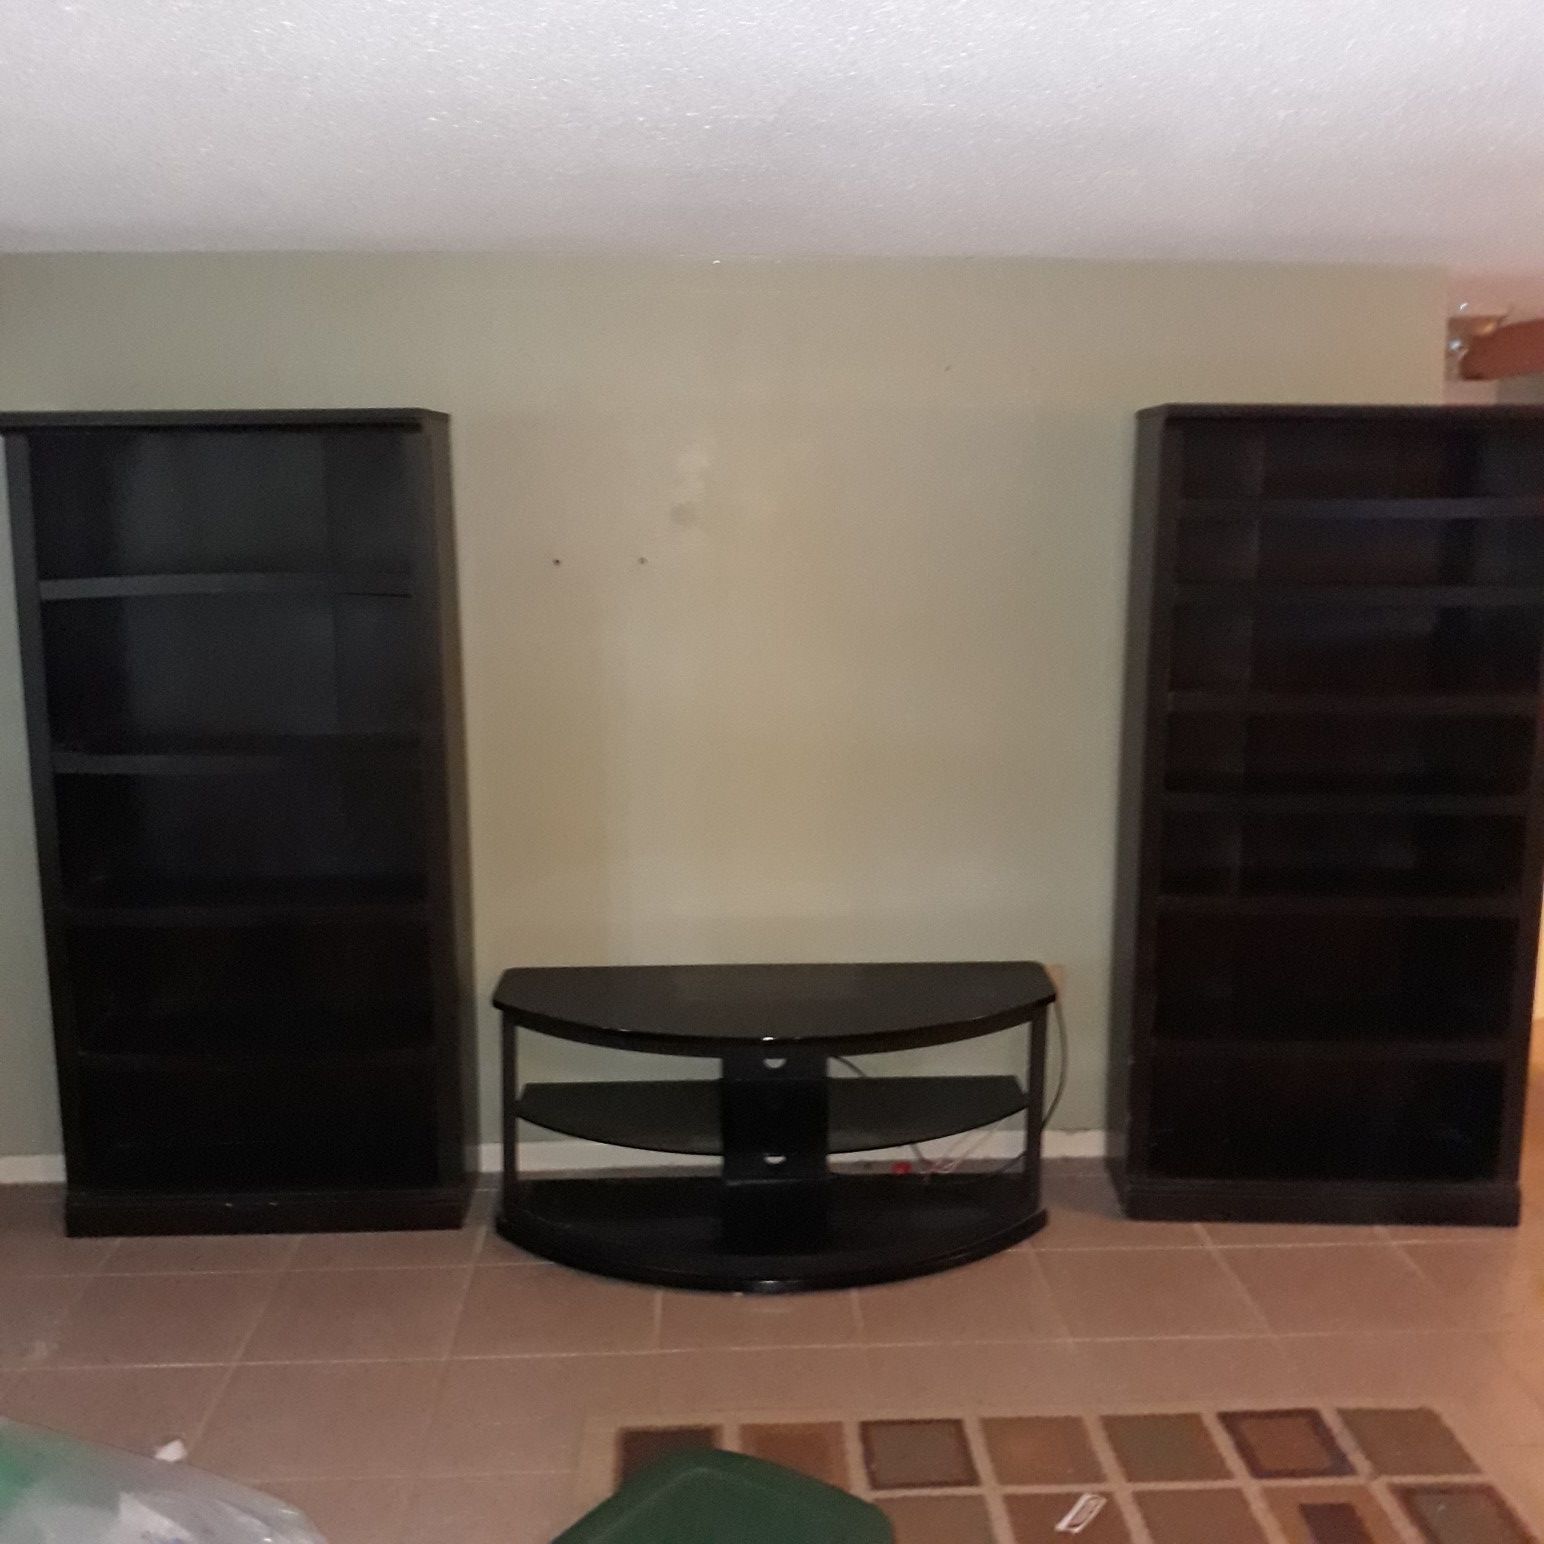 2 bookshelves, tv stand